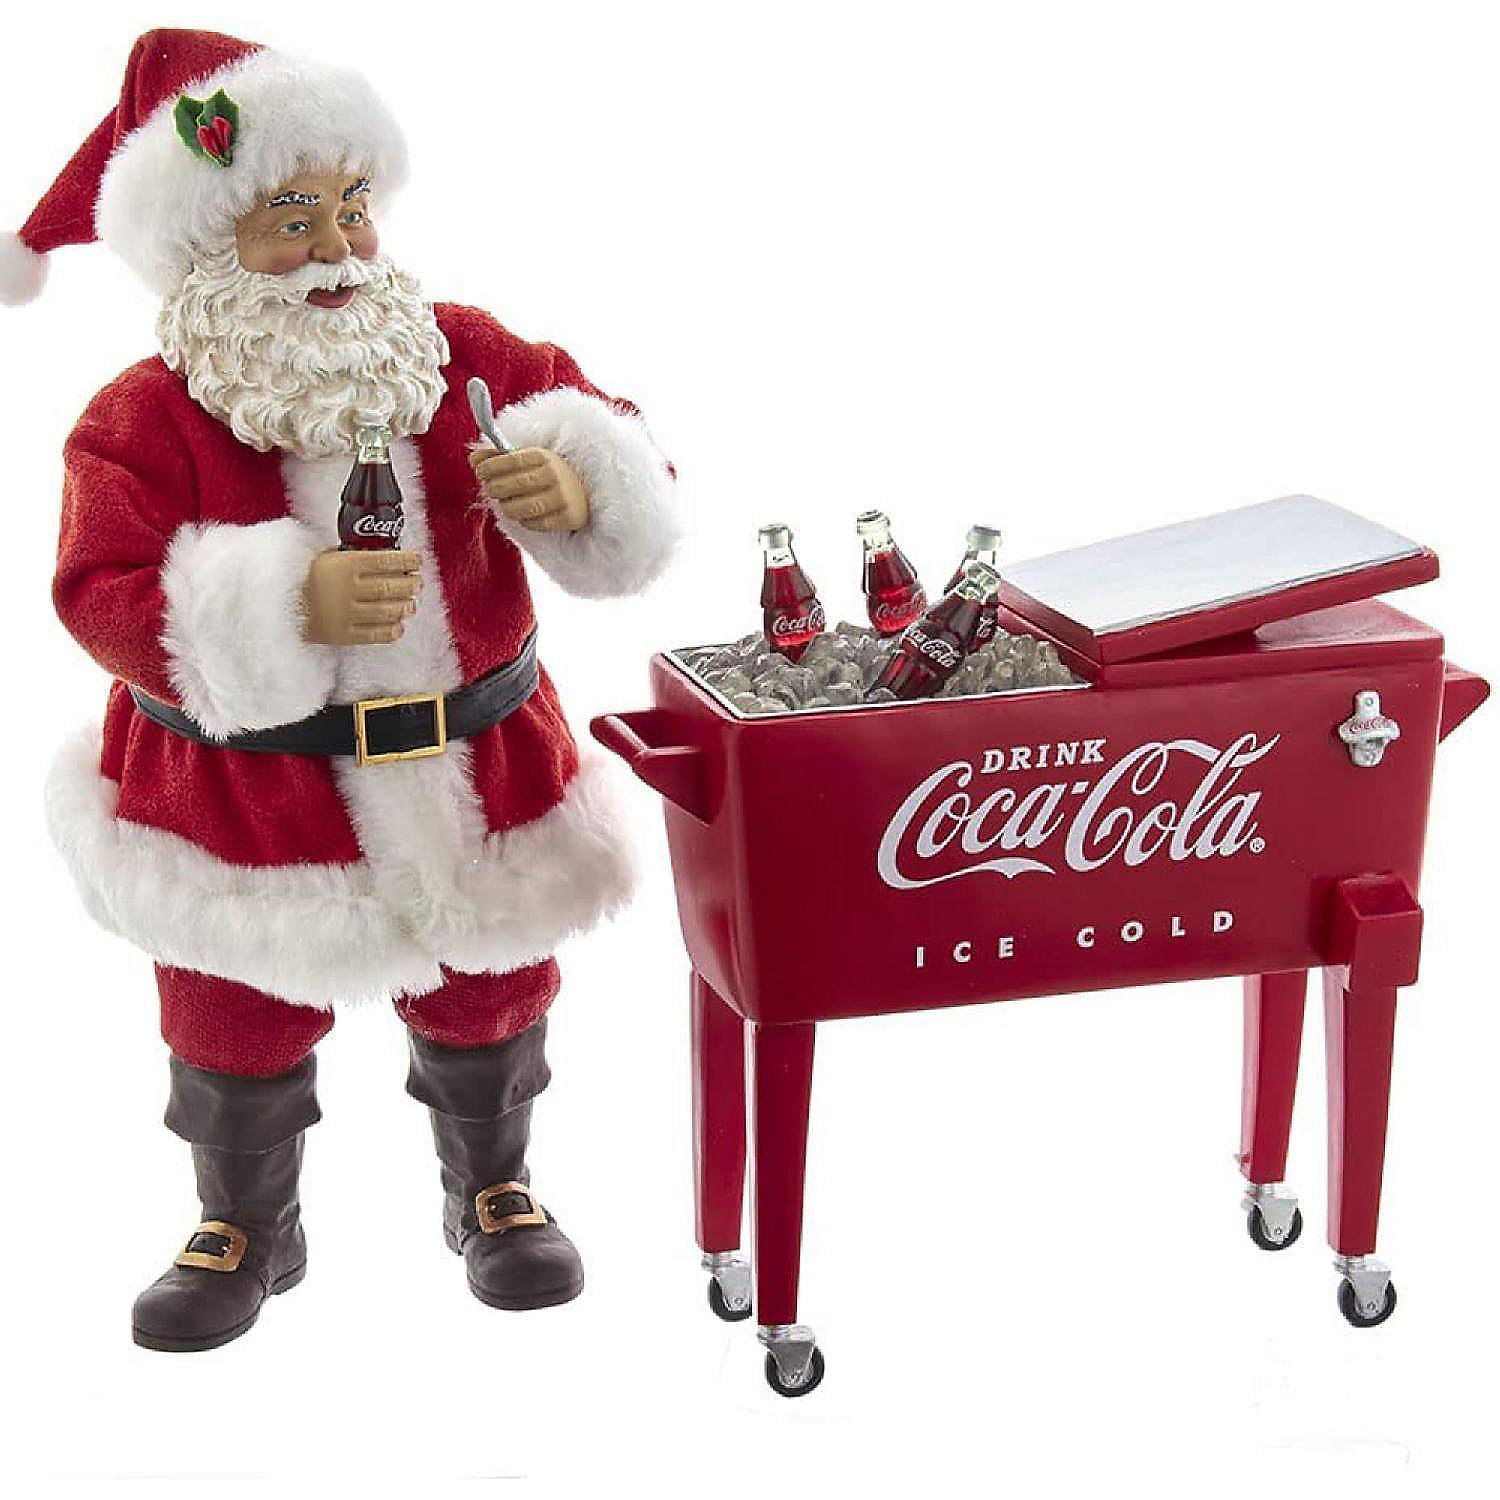 Coca-Cola Coke Santa with Table Piece Set, Multi-Colored,14-Inches | Oriental Trading